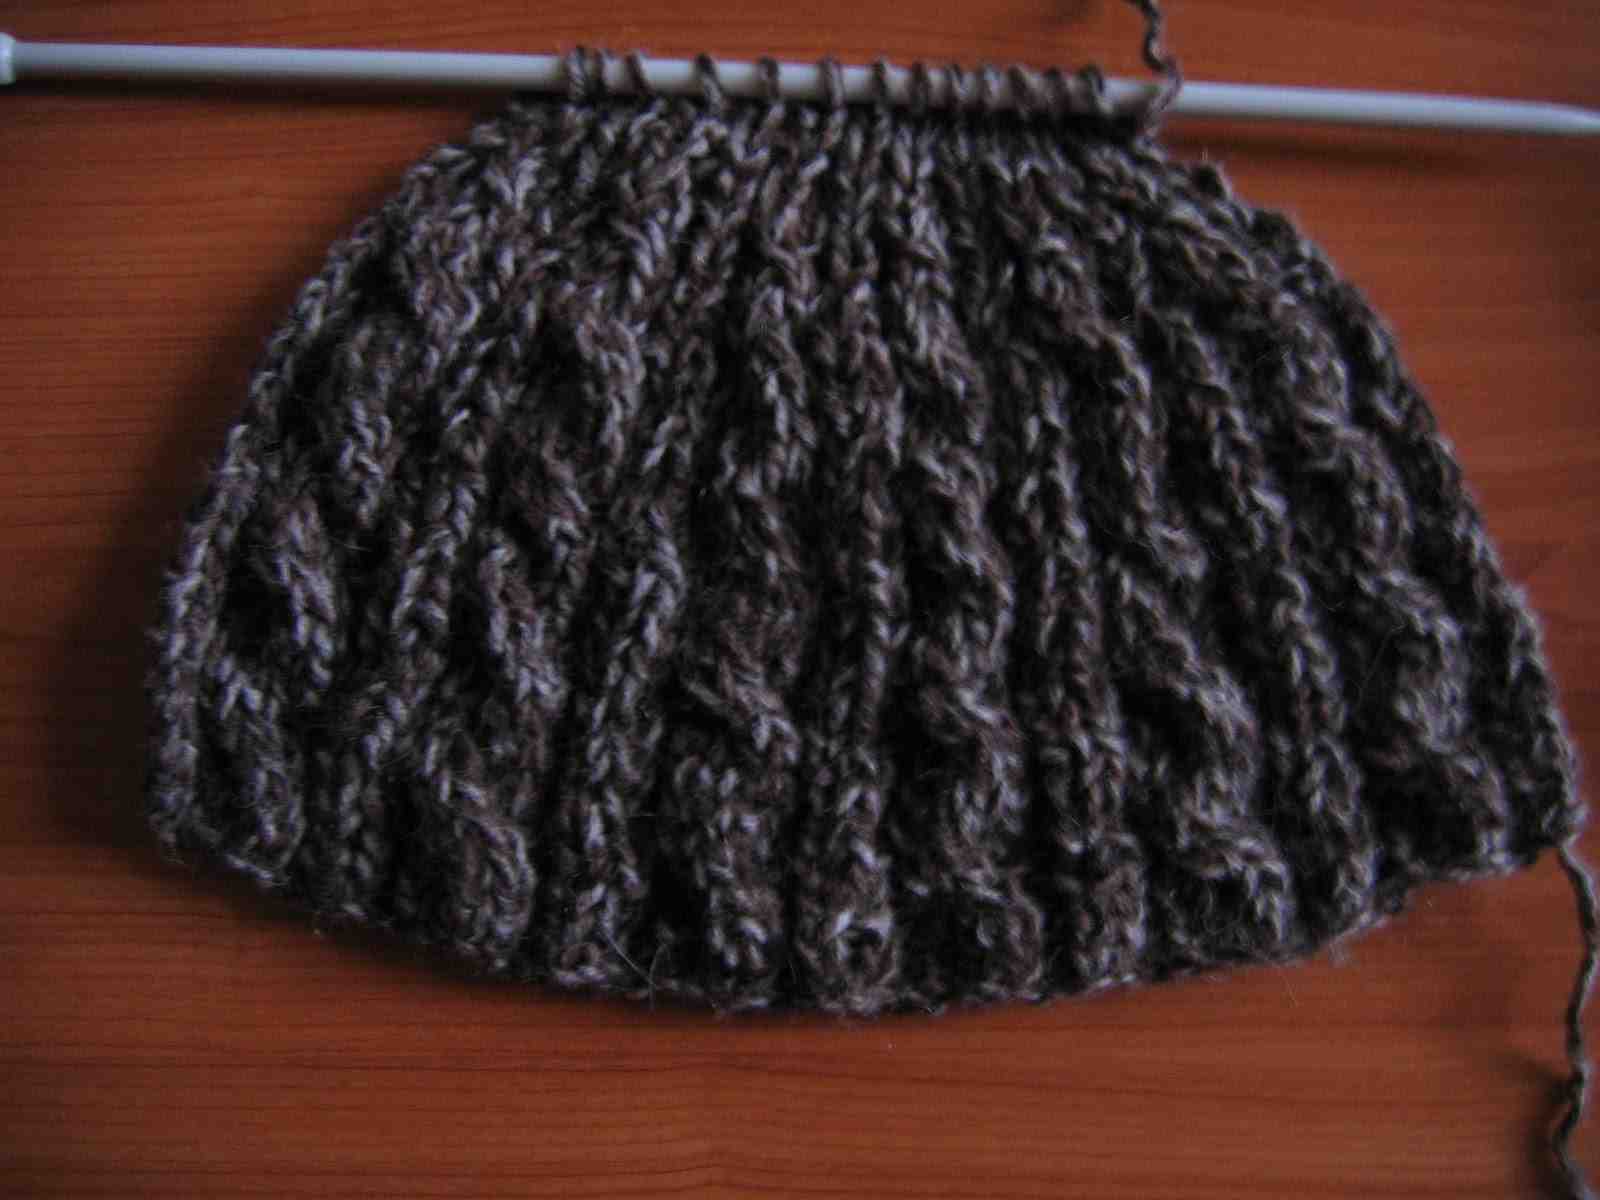 Comment rétrécir un bonnet en laine?